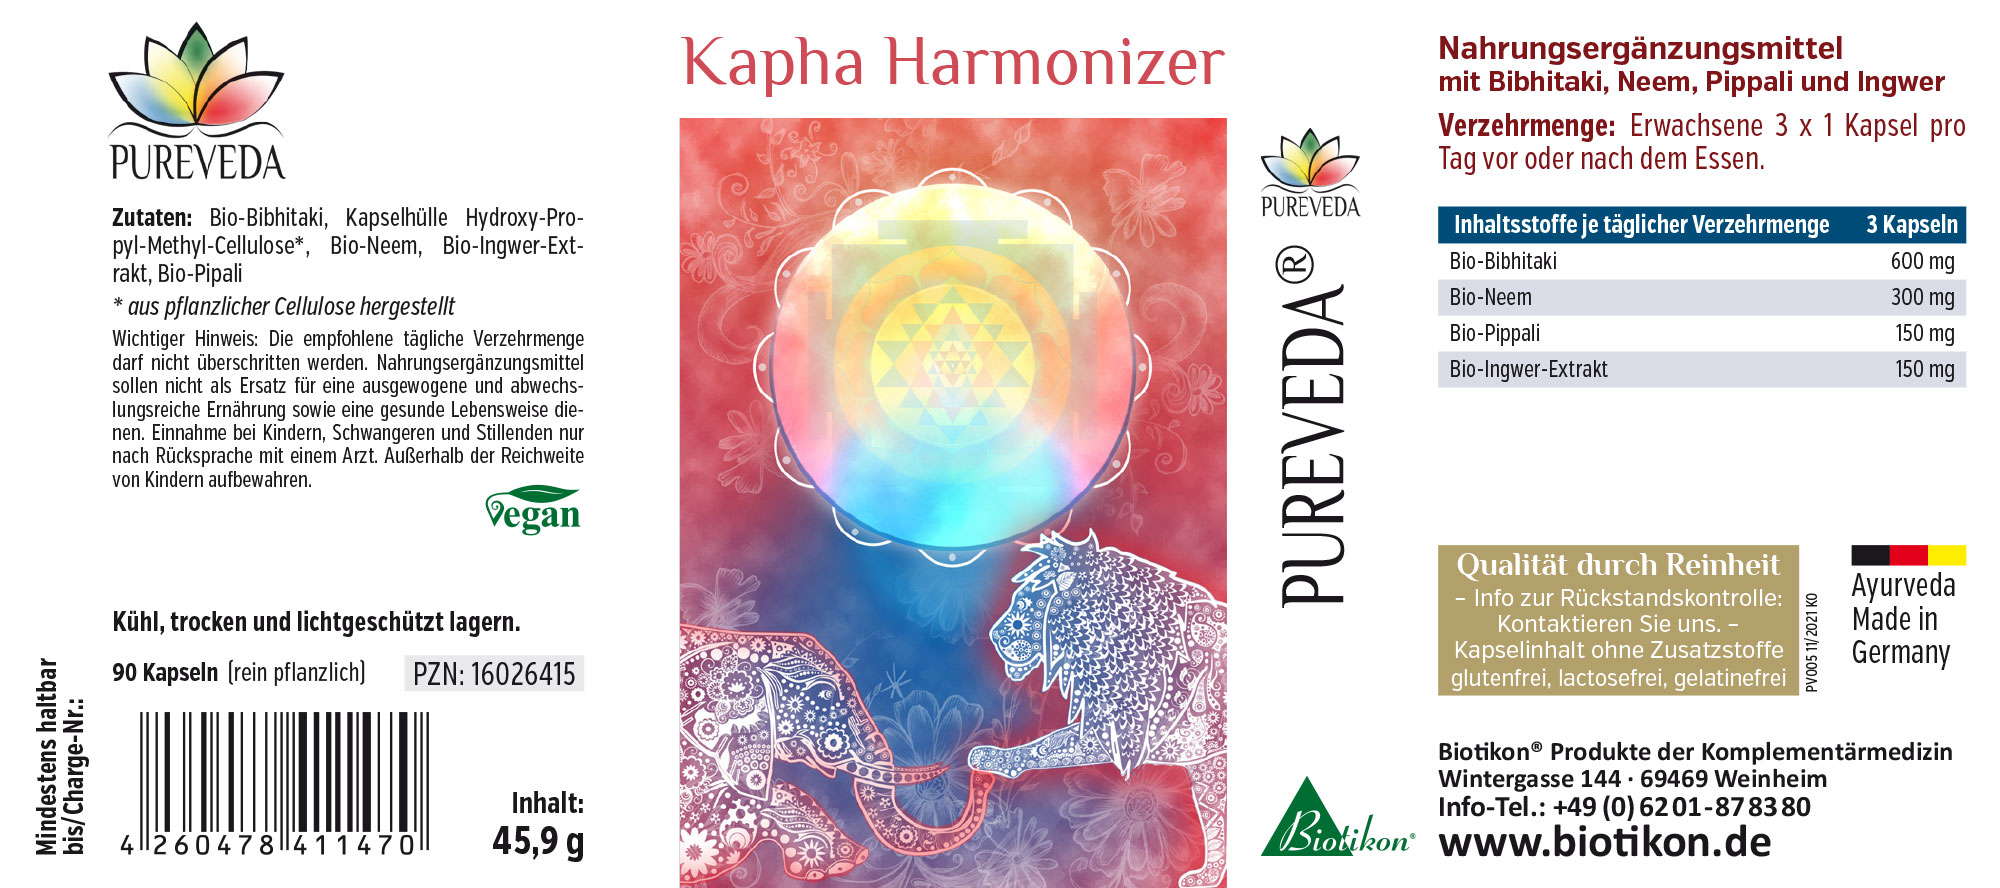 Kapha Harmonizer